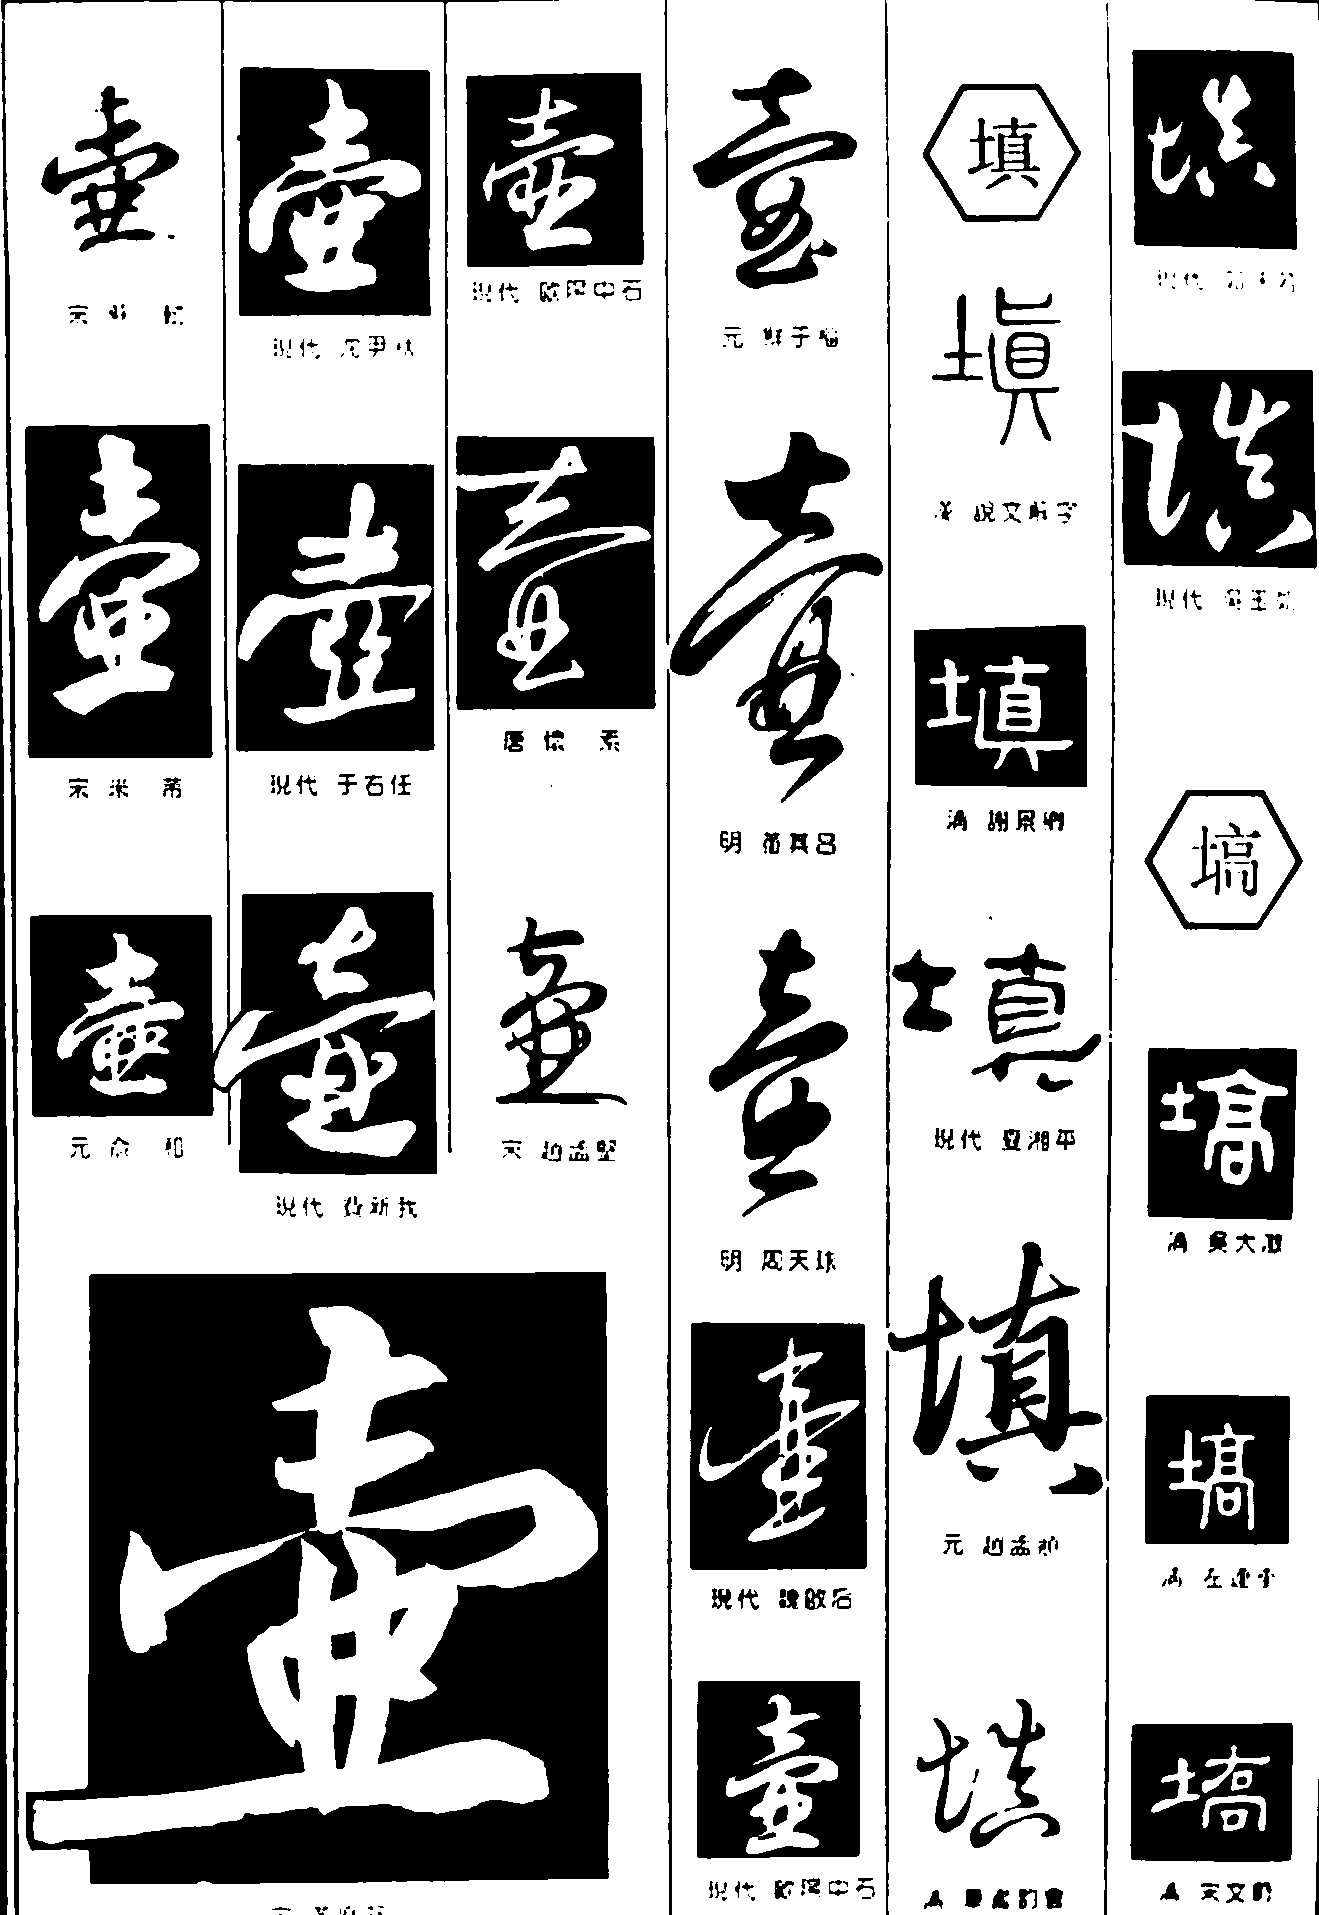 壶填高_书法字体_字体设计作品-中国字体设计网_ziti.